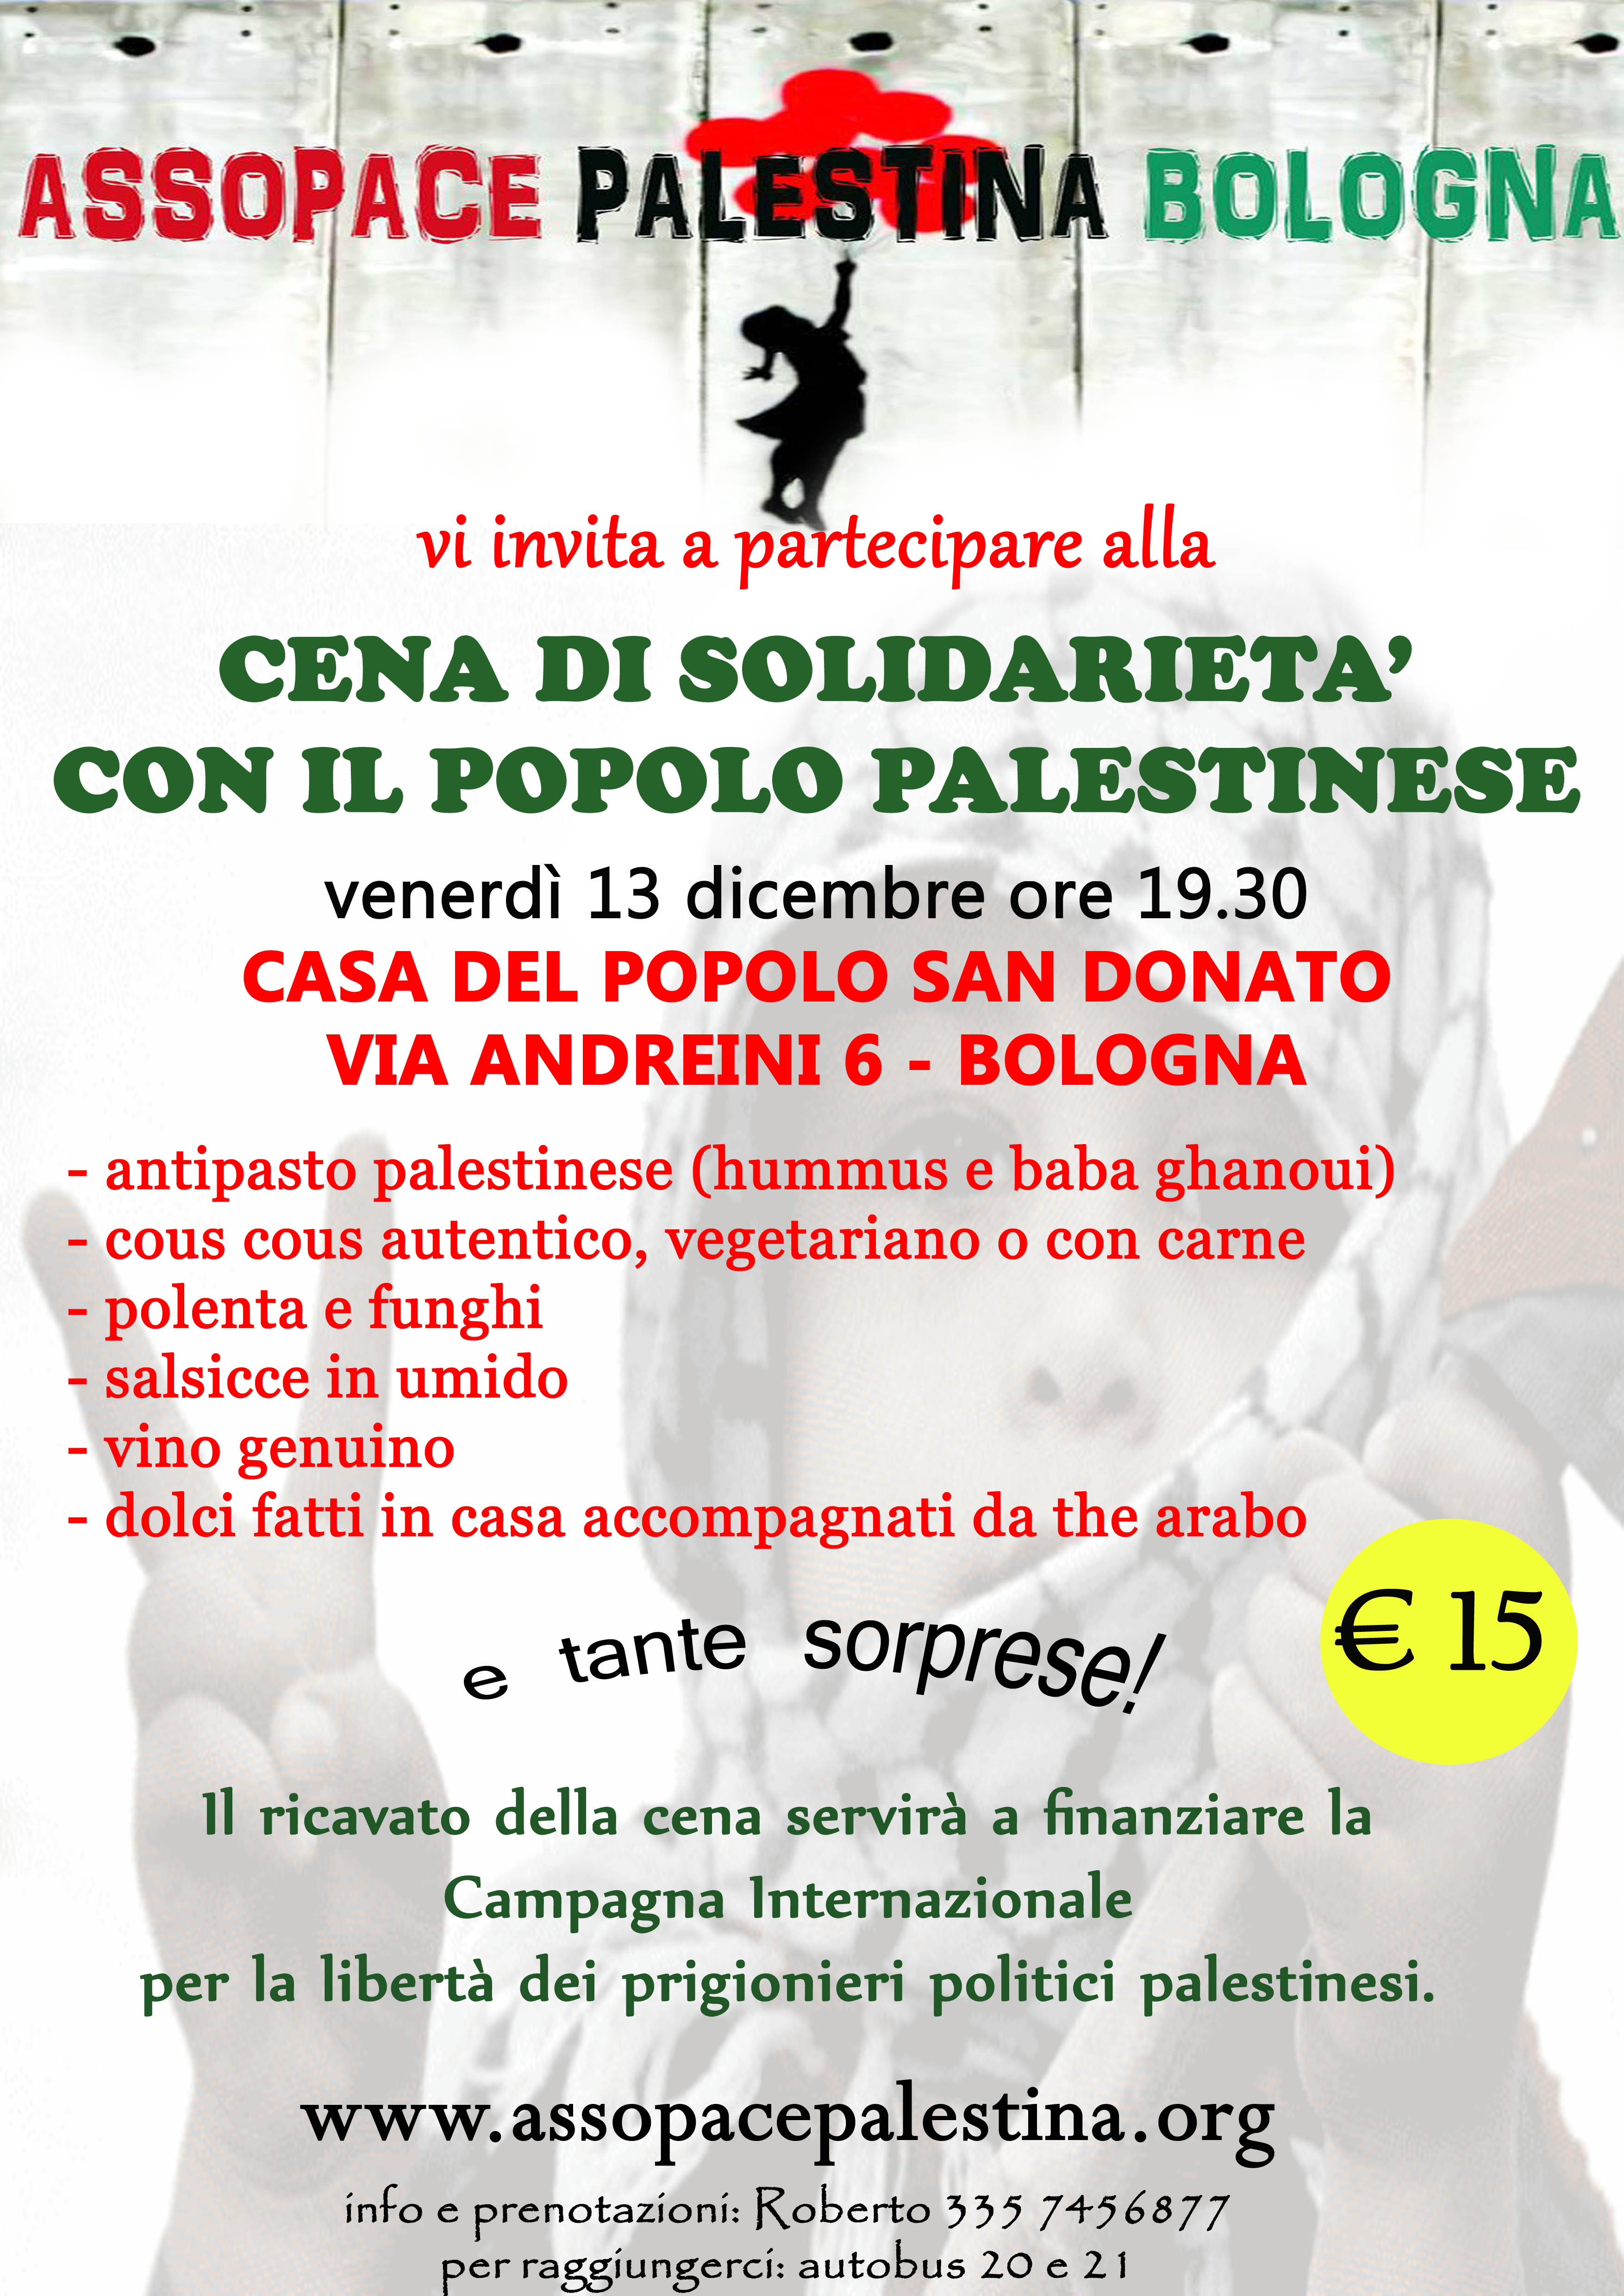 Bologna 13 dicembre: Cena di solidarietà con il popolo palestinese